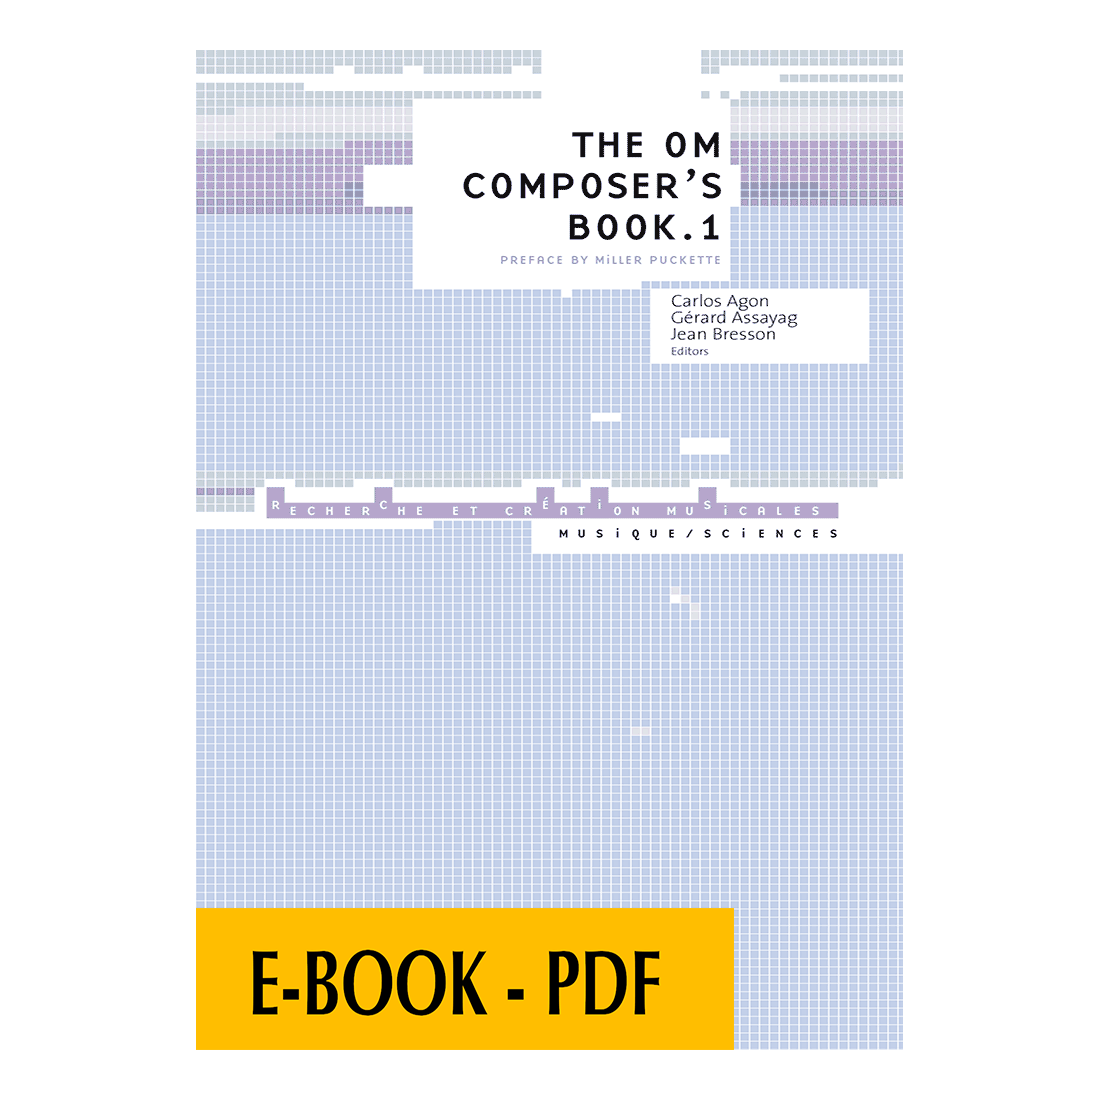 The OM Composer's book 1 - E-book PDF SP